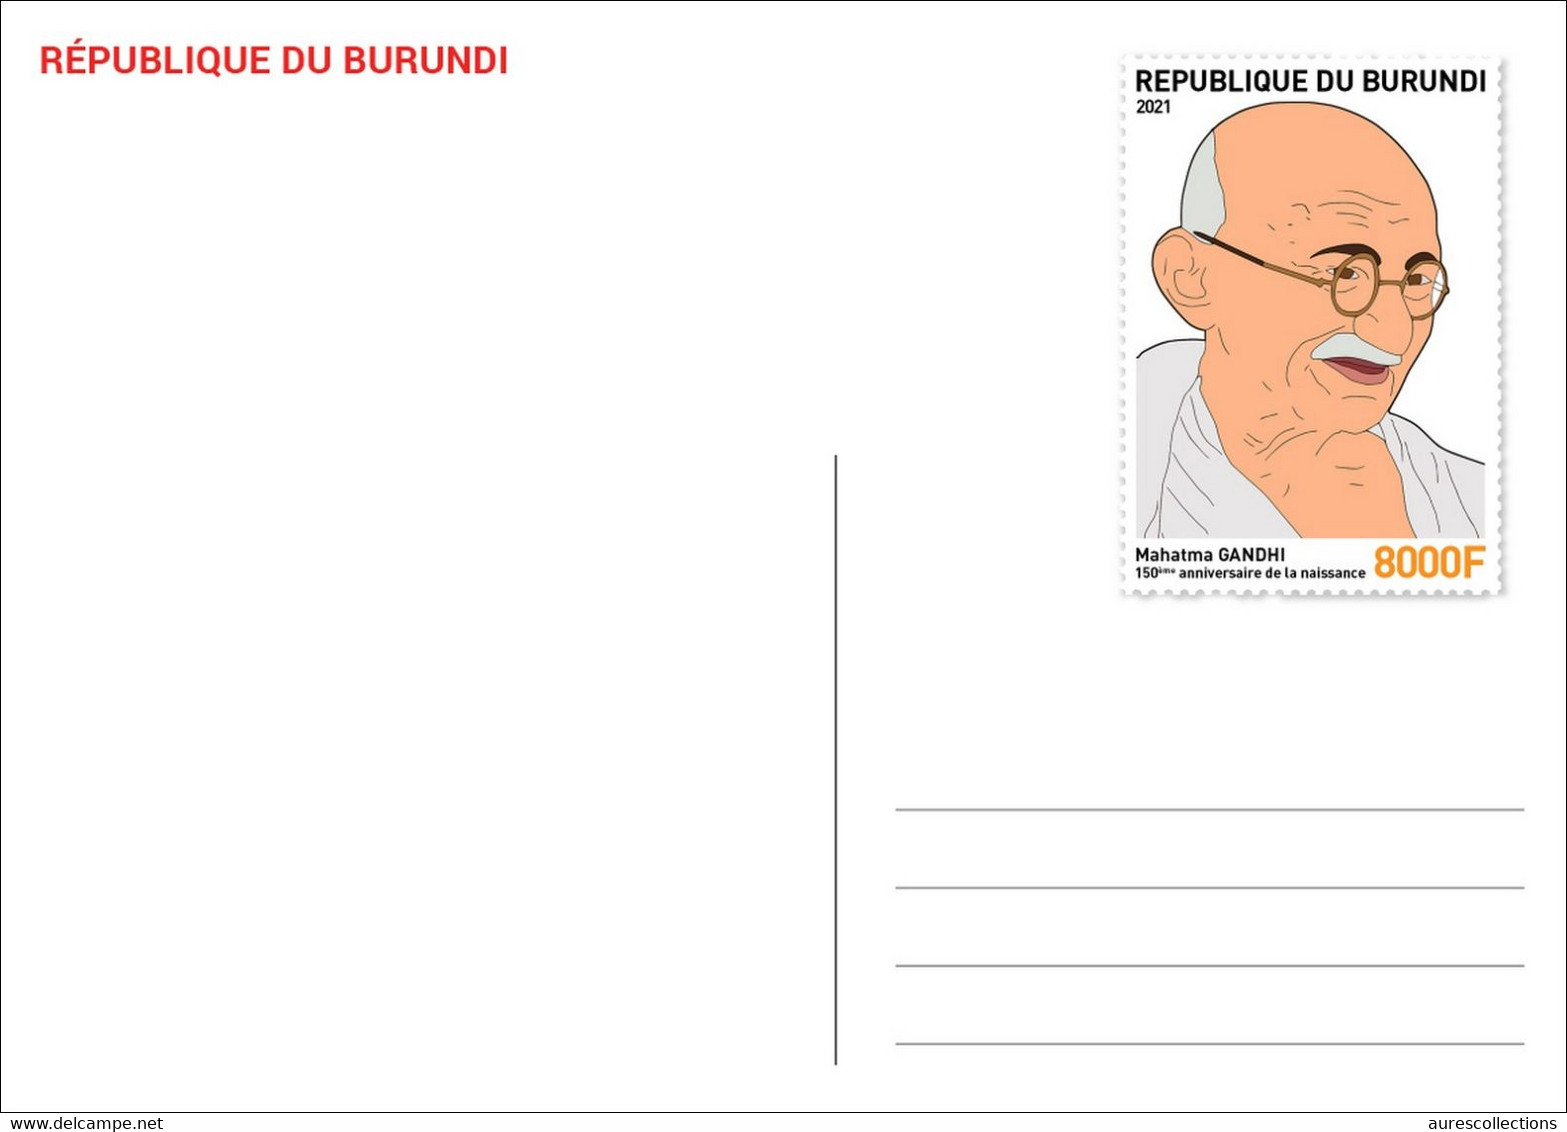 BURUNDI 2021 - STATIONERY CARD - JOINT ISSUE MAHATMA GANDHI 150 TH BIRTH ANNIVERSARY - RARE - Mahatma Gandhi